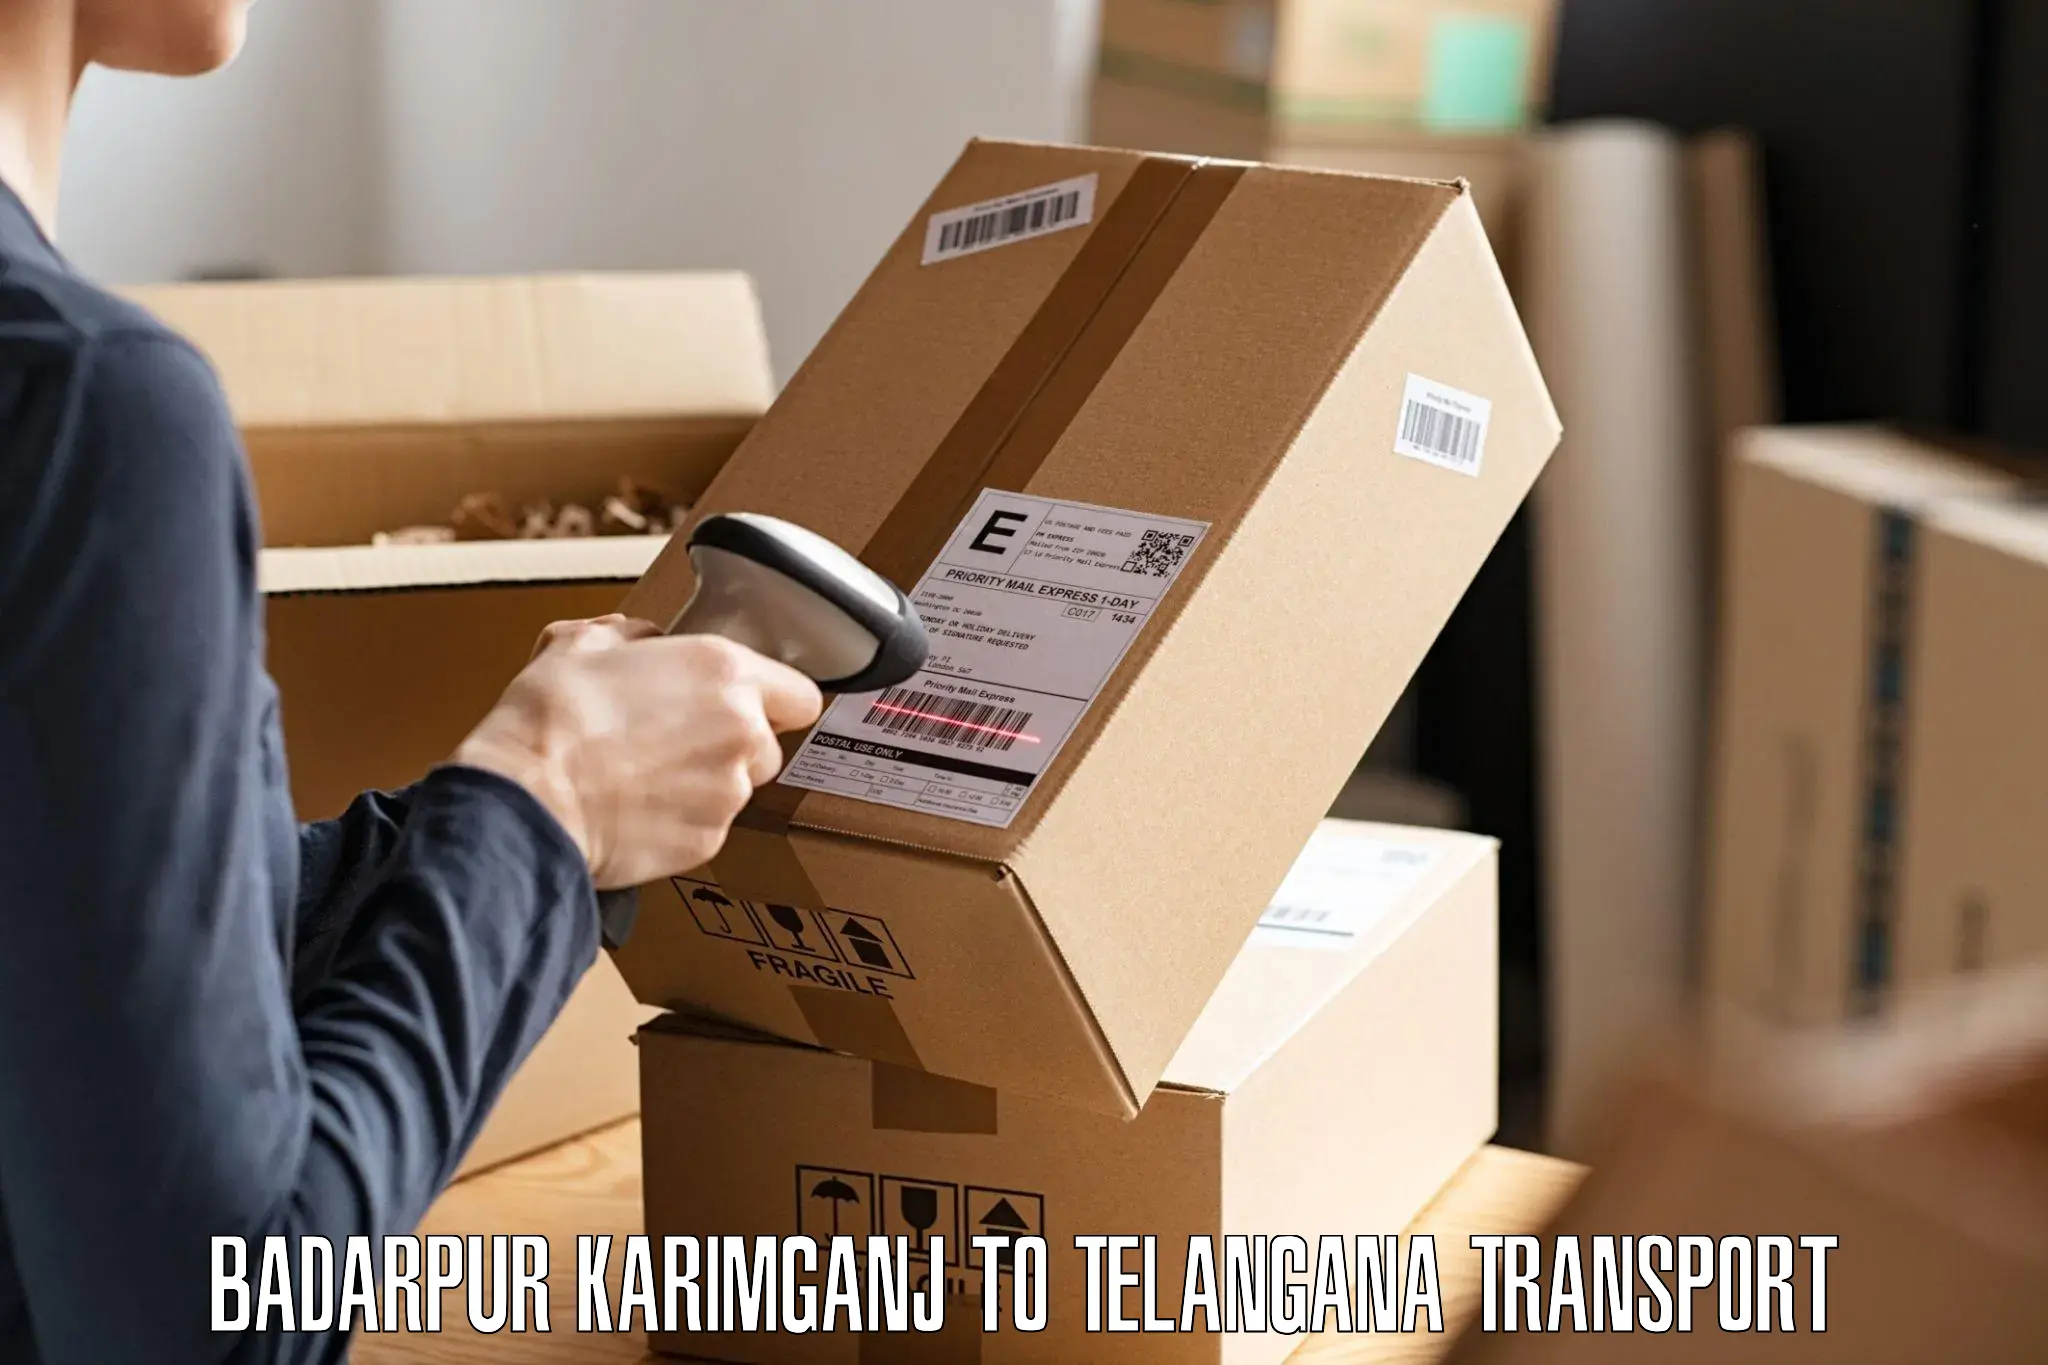 Furniture transport service Badarpur Karimganj to Bijinapalle